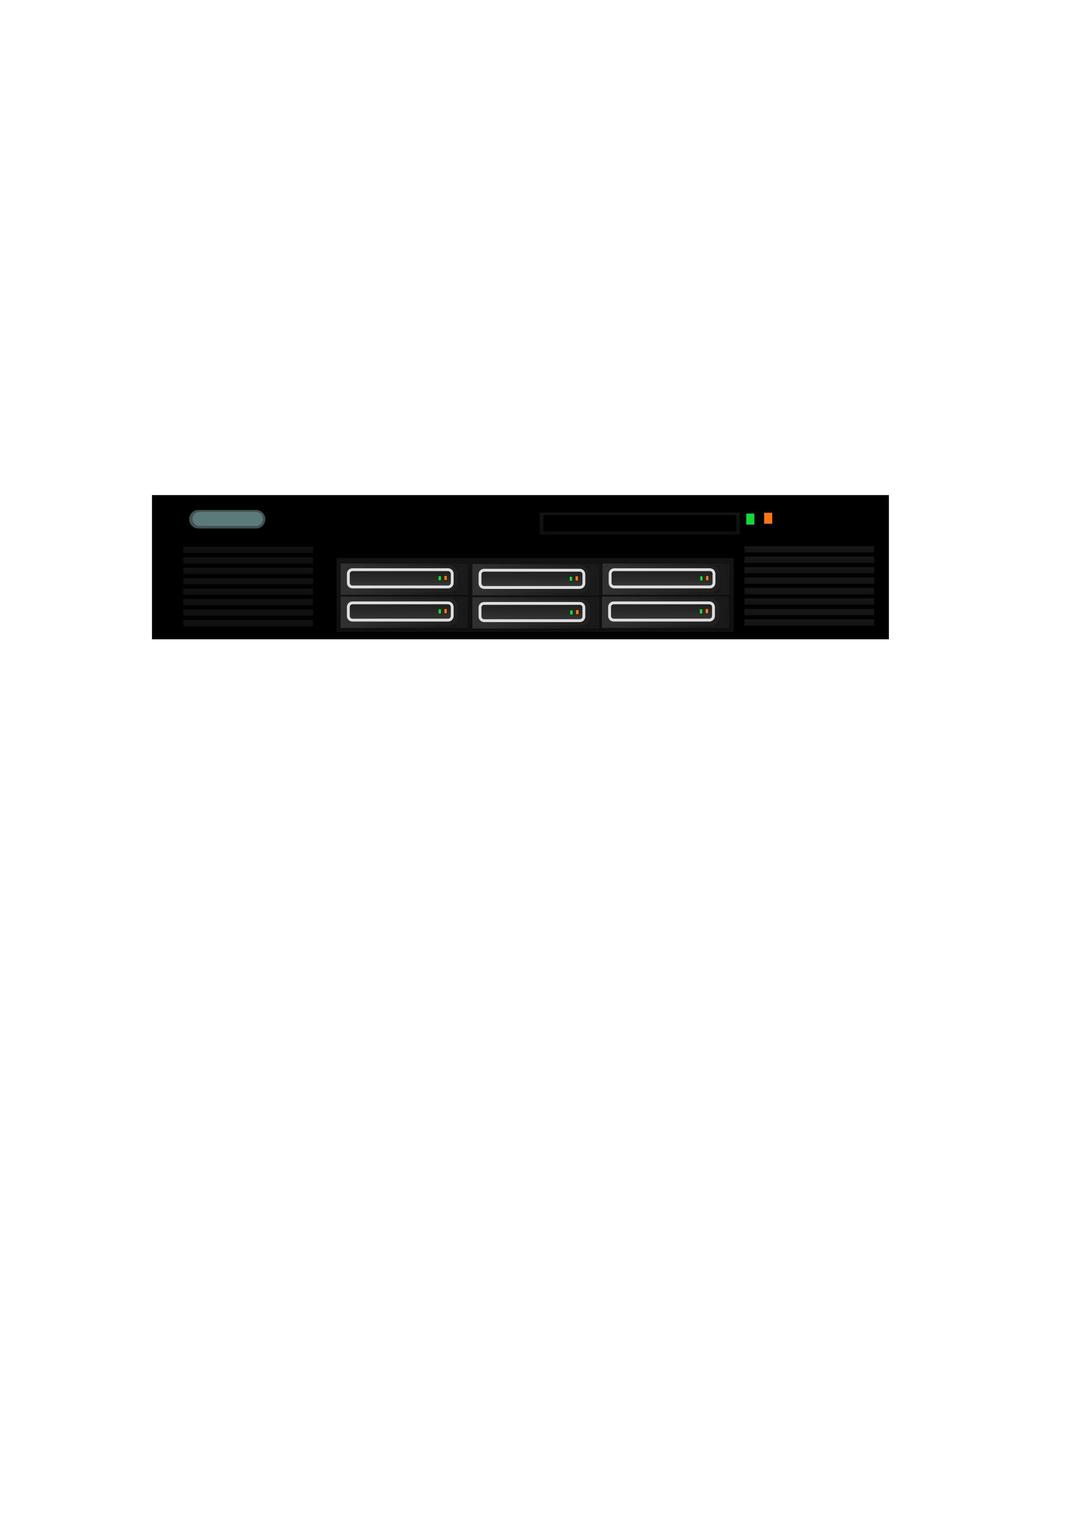 Generic rackmount server png transparent